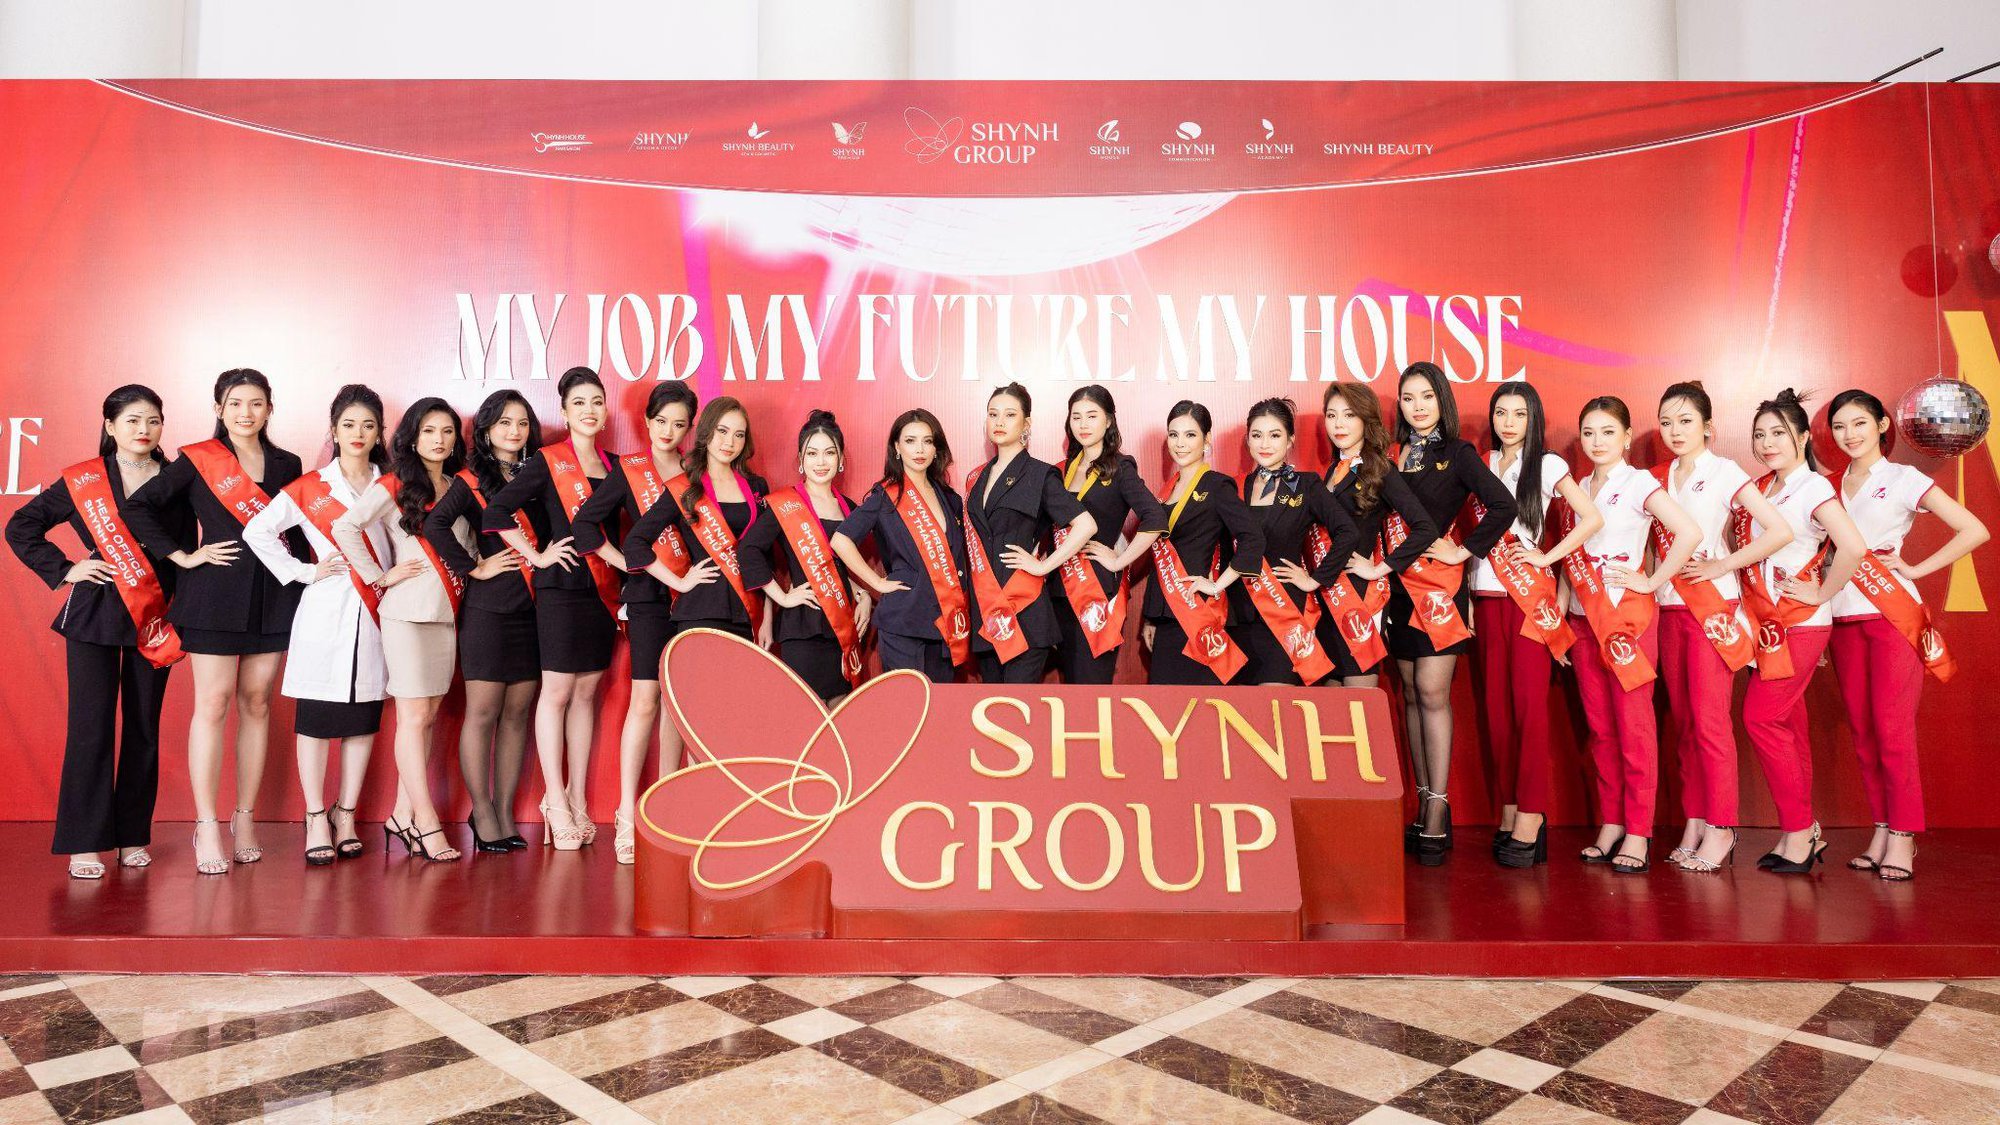 Shynh Group tổ chức tiệc tân niên, kỷ niệm gần 1 thập kỷ hình thành và phát triển - Ảnh 6.